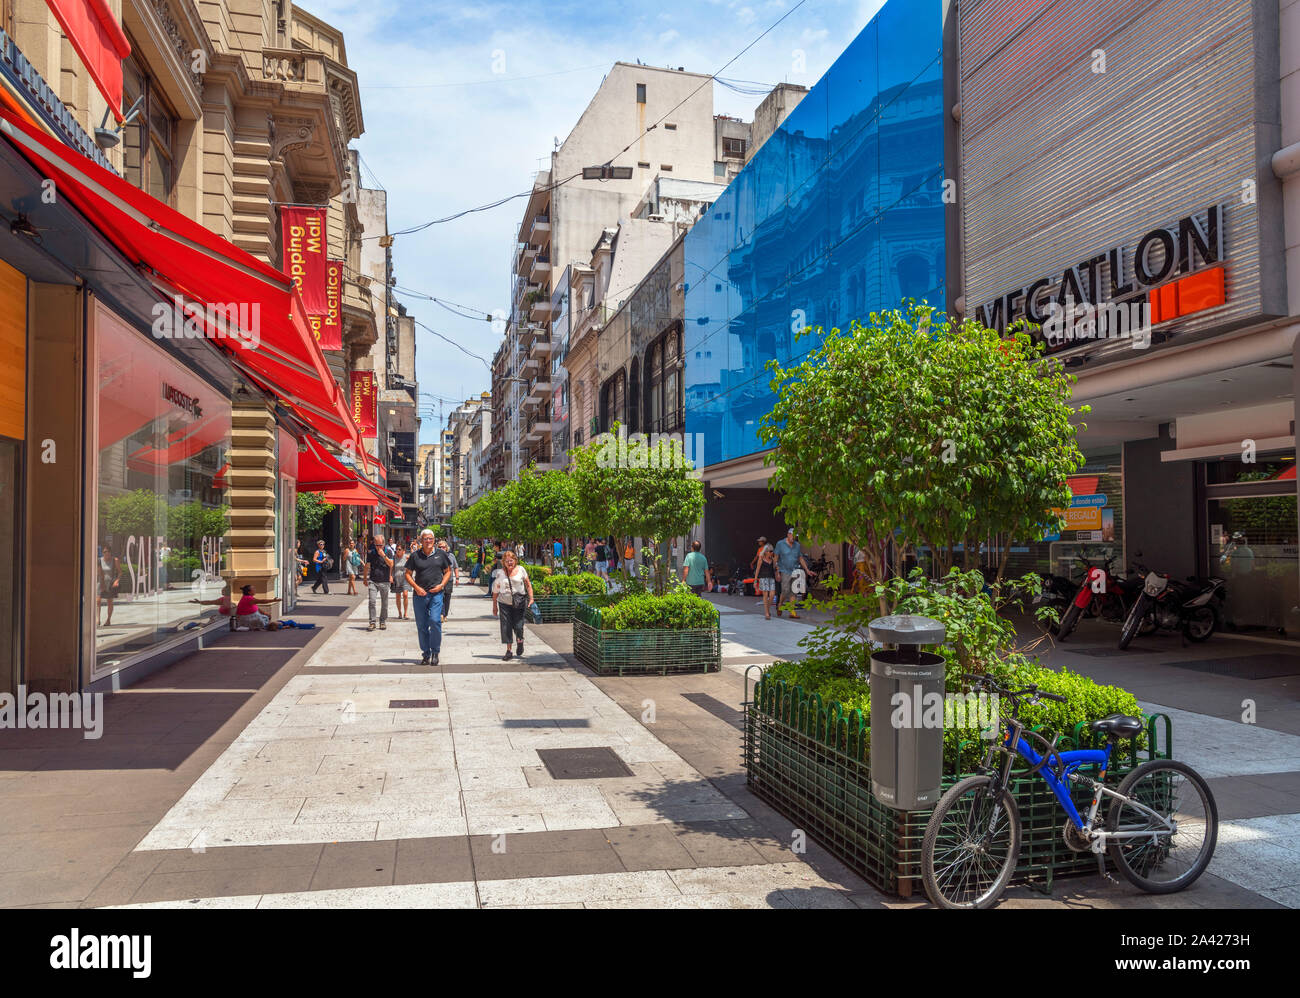 Calle Florida, eine große Einkaufsstraße im Stadtzentrum, Buenos Aires, Argentinien Stockfoto